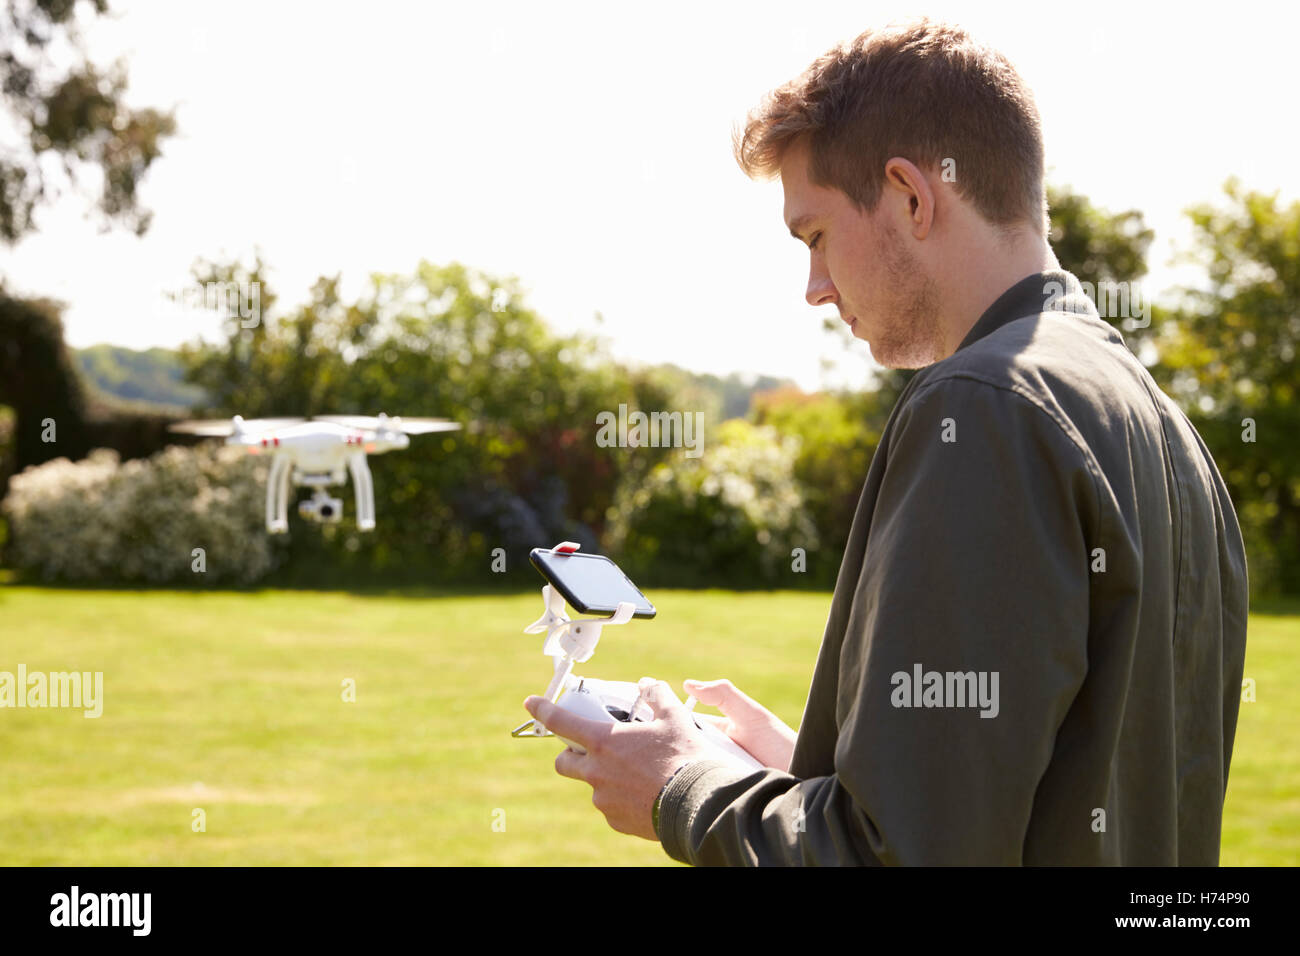 Mann fliegen Drone Quadcopter im Garten Stockfoto